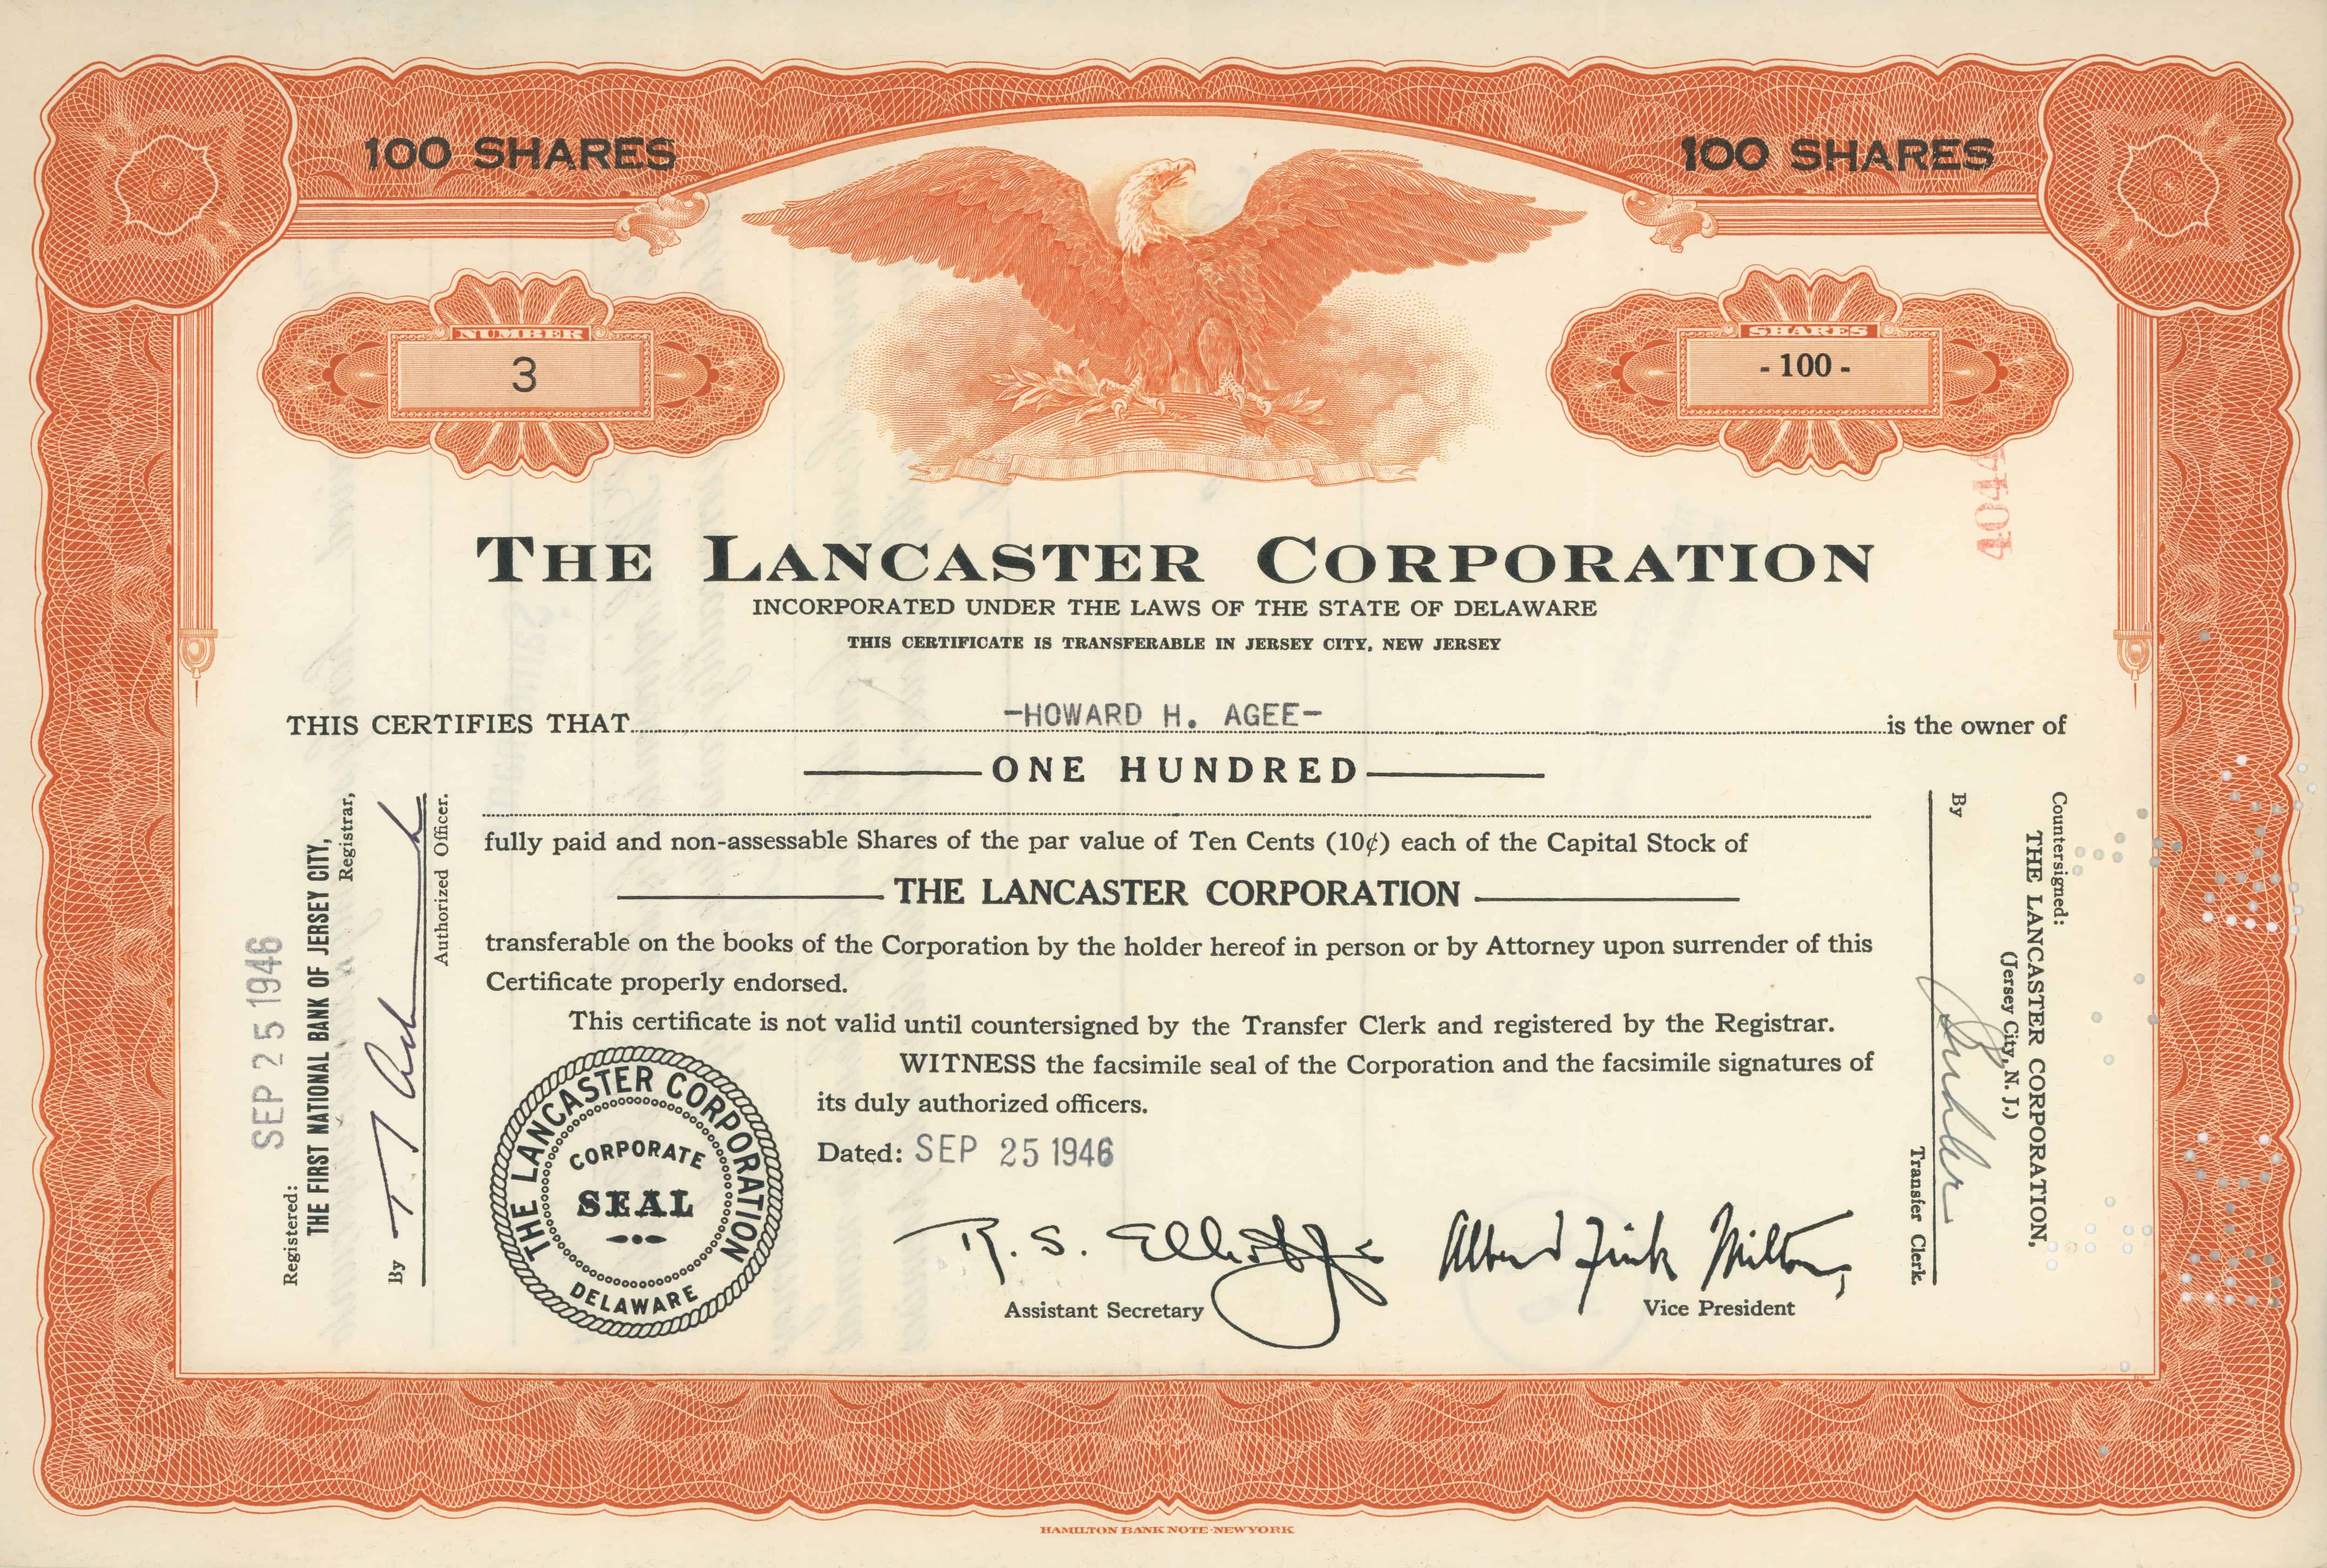 100 akcji The Lancaster Corporation z 25 września 1946 roku